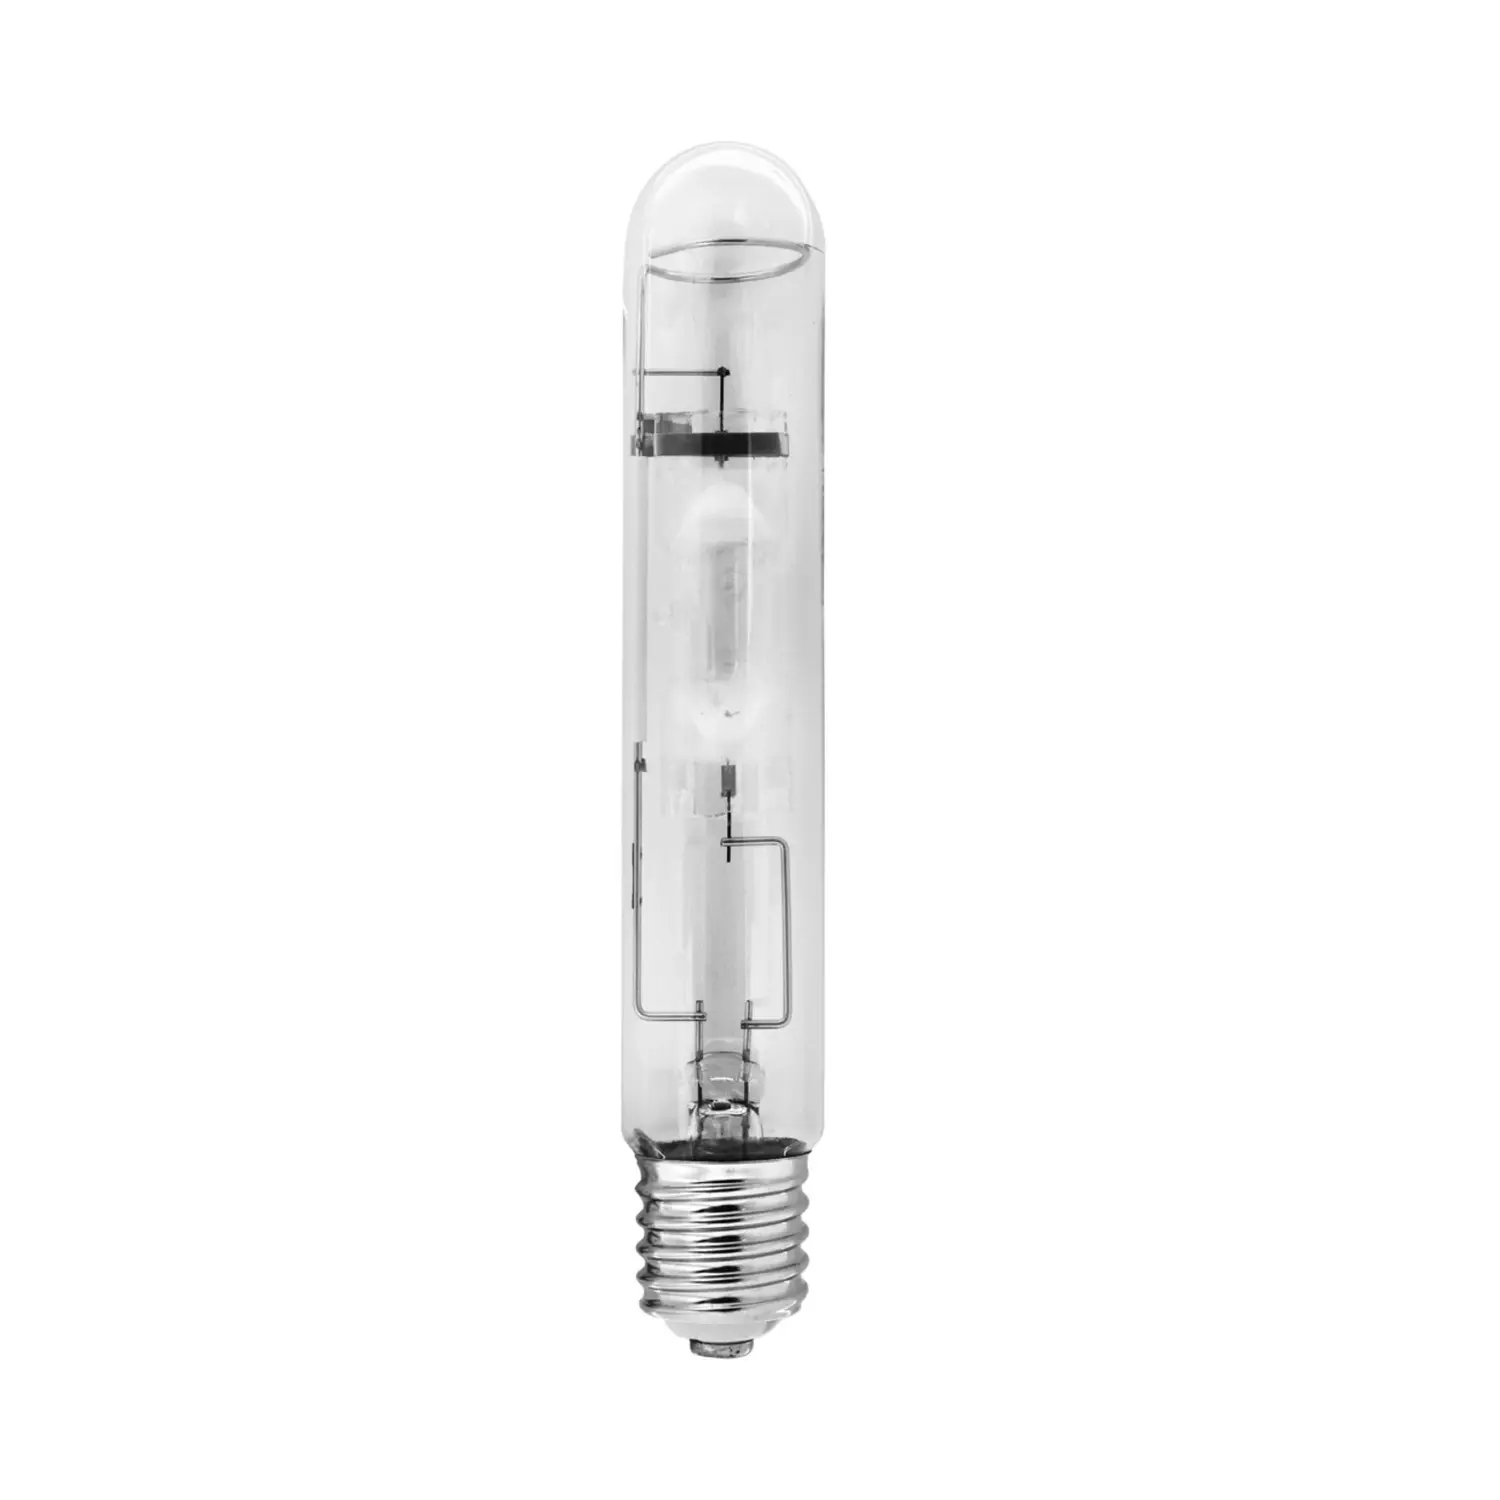 immagine del prodotto lampadina ioduri metallici lampada industriale e40 400 watt bianco naturale